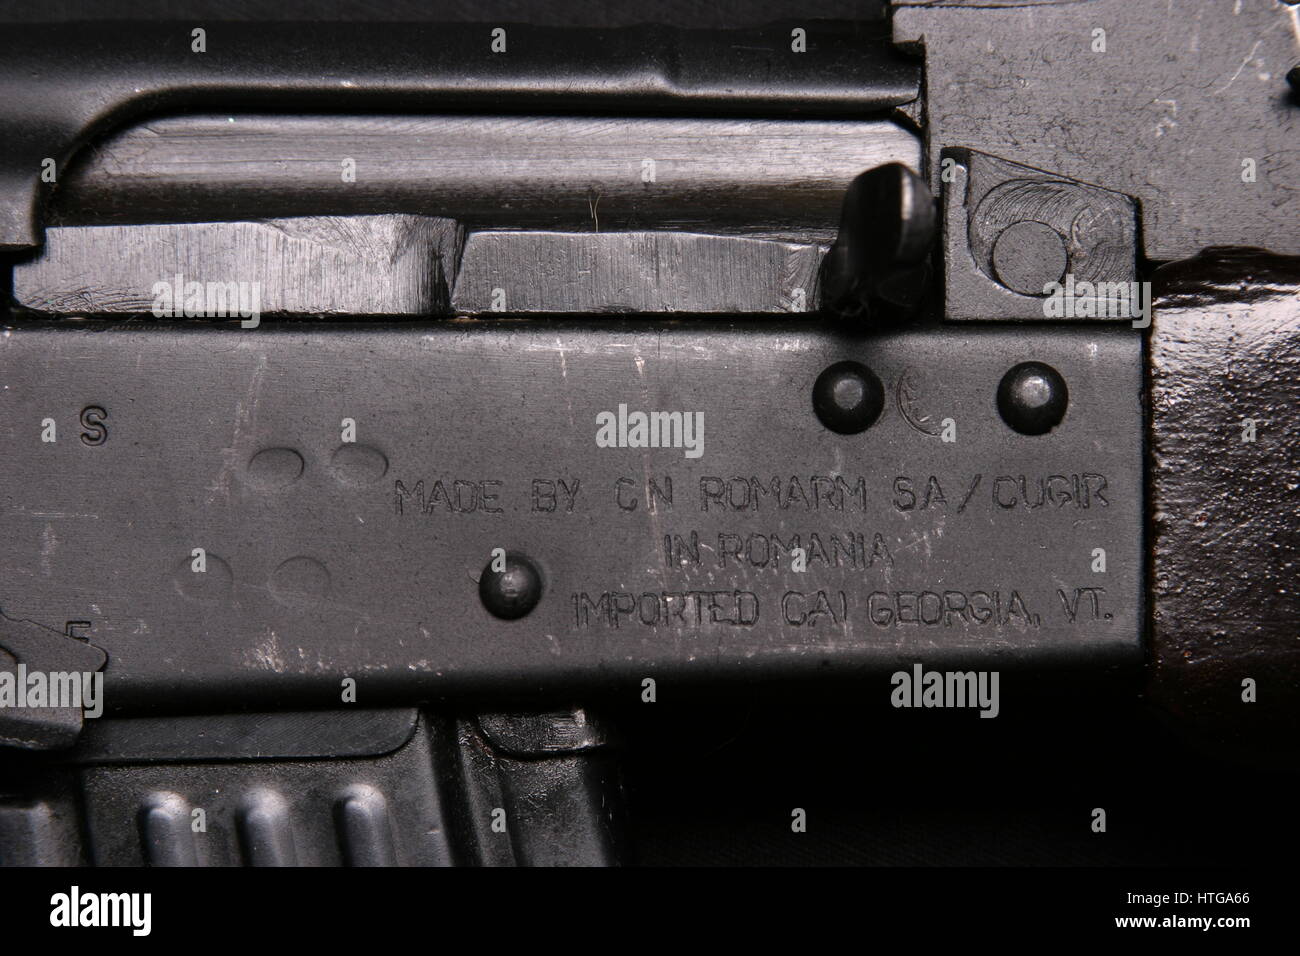 AK-47 Gewehr Detail Stockfoto